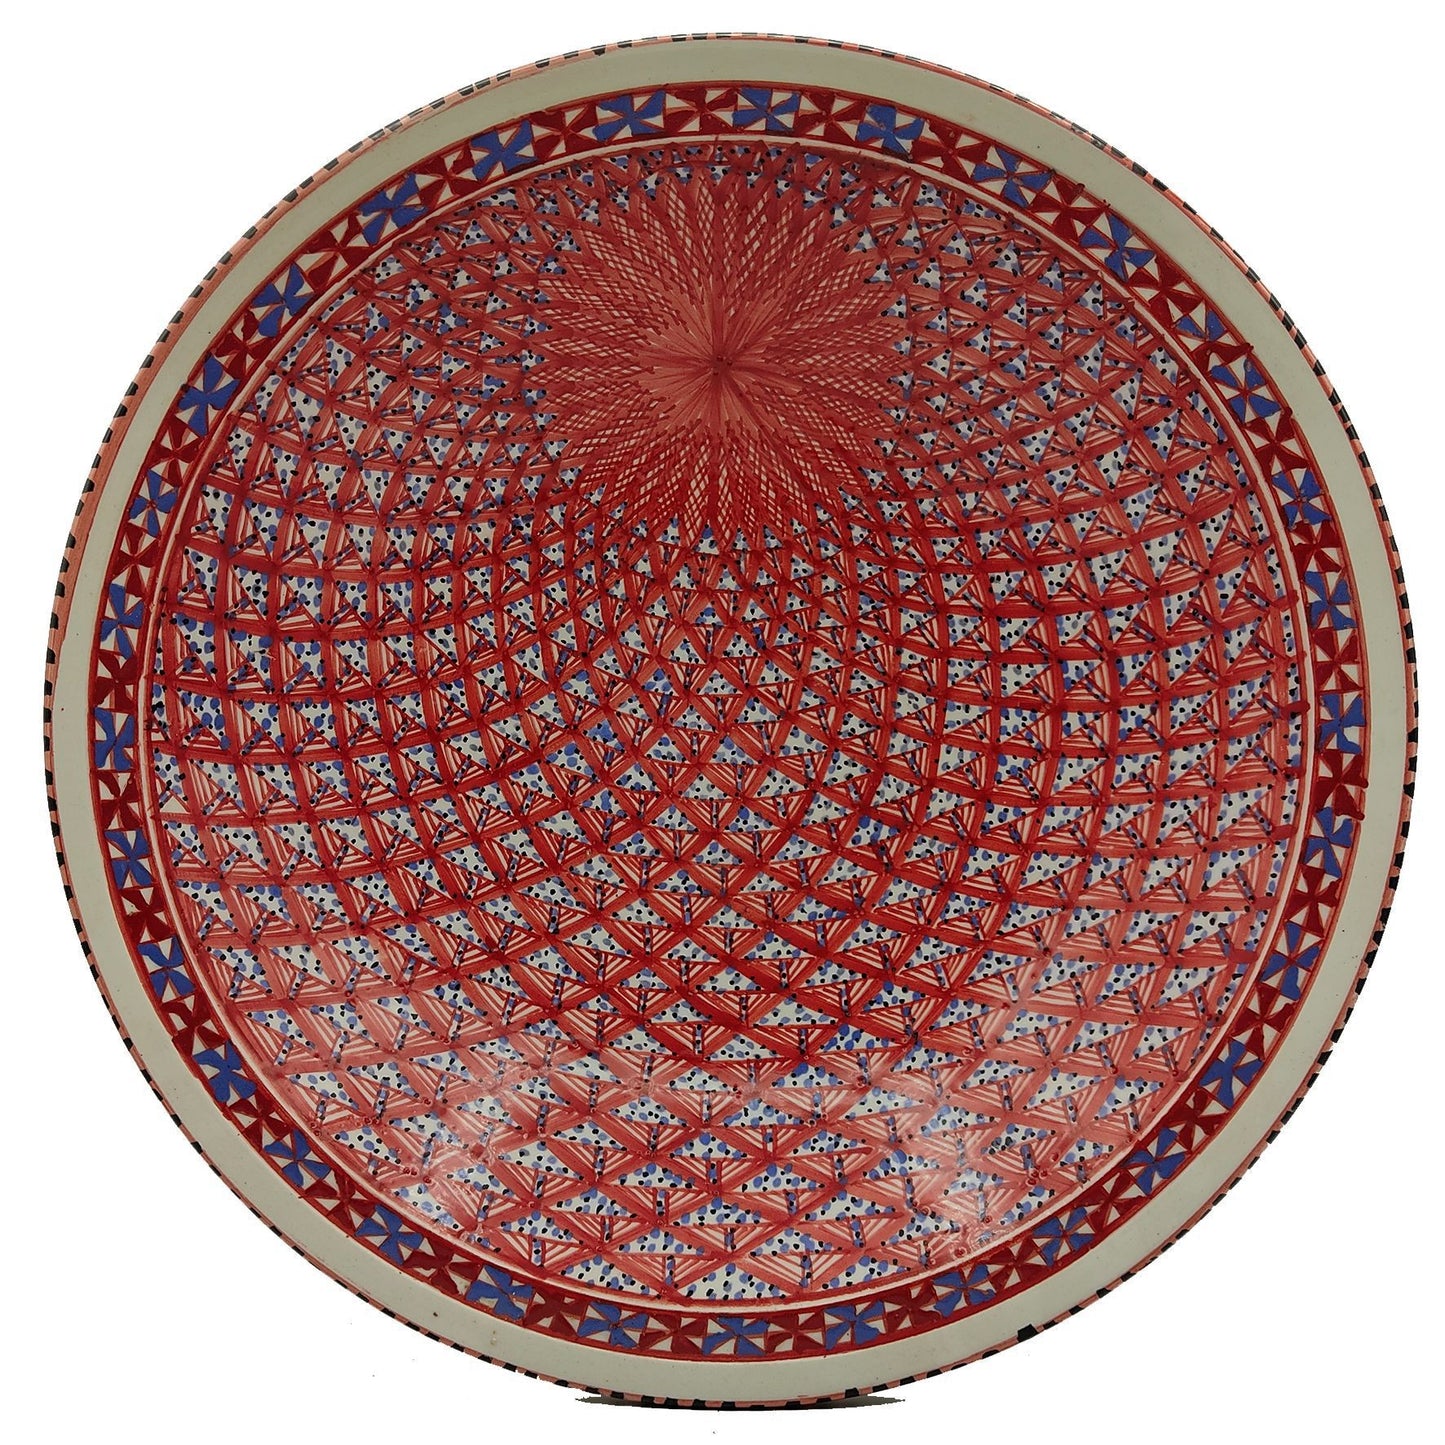 Piatto Ceramica Bianca Alta Qualita Portata Decorativo Etnic Tunisino 1301210937